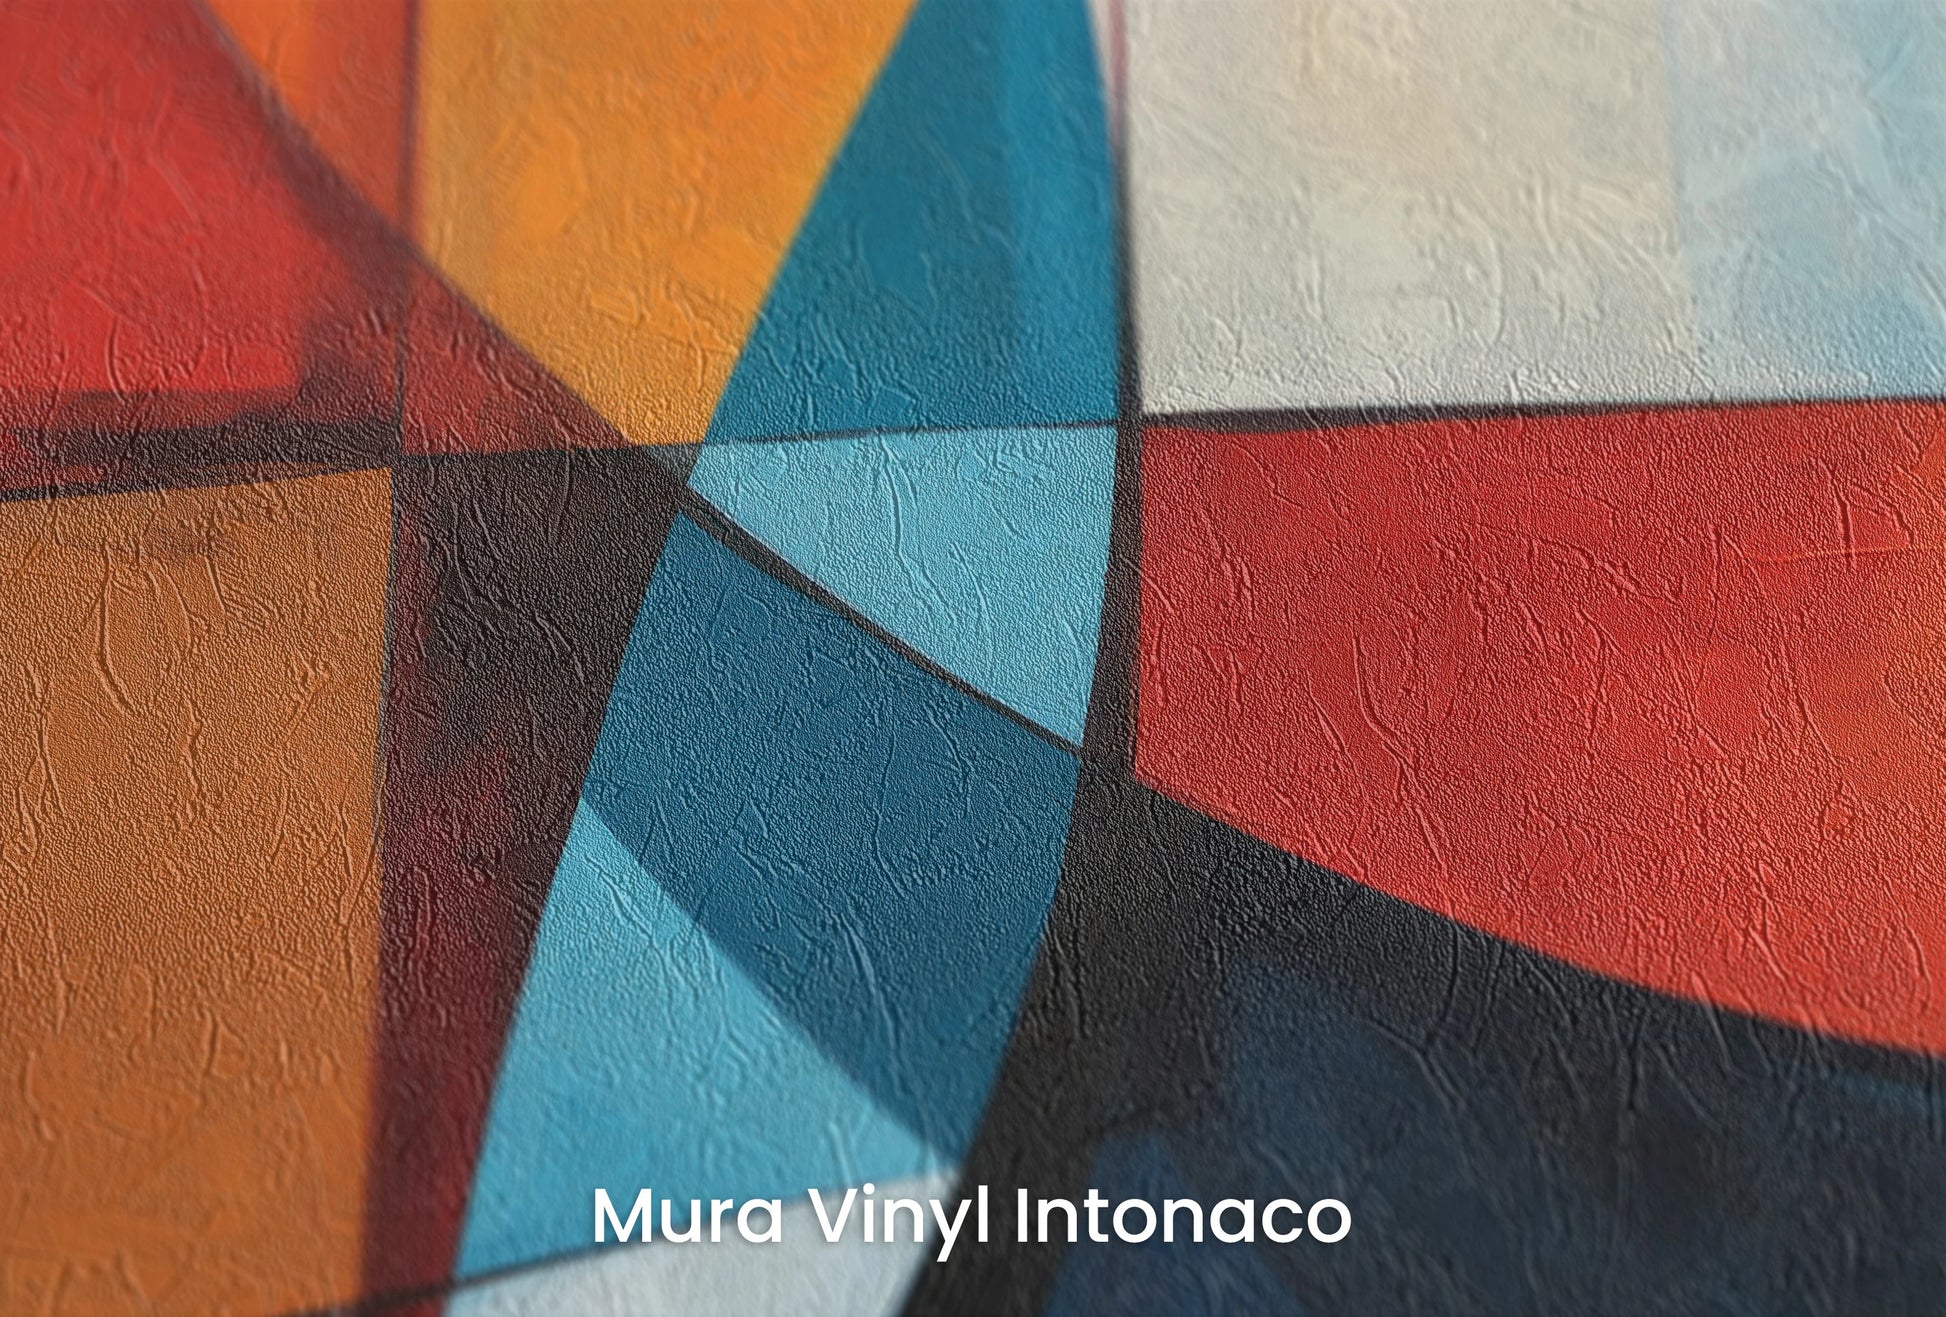 Zbliżenie na artystyczną fototapetę o nazwie Intersecting Orbits na podłożu Mura Vinyl Intonaco - struktura tartego tynku.